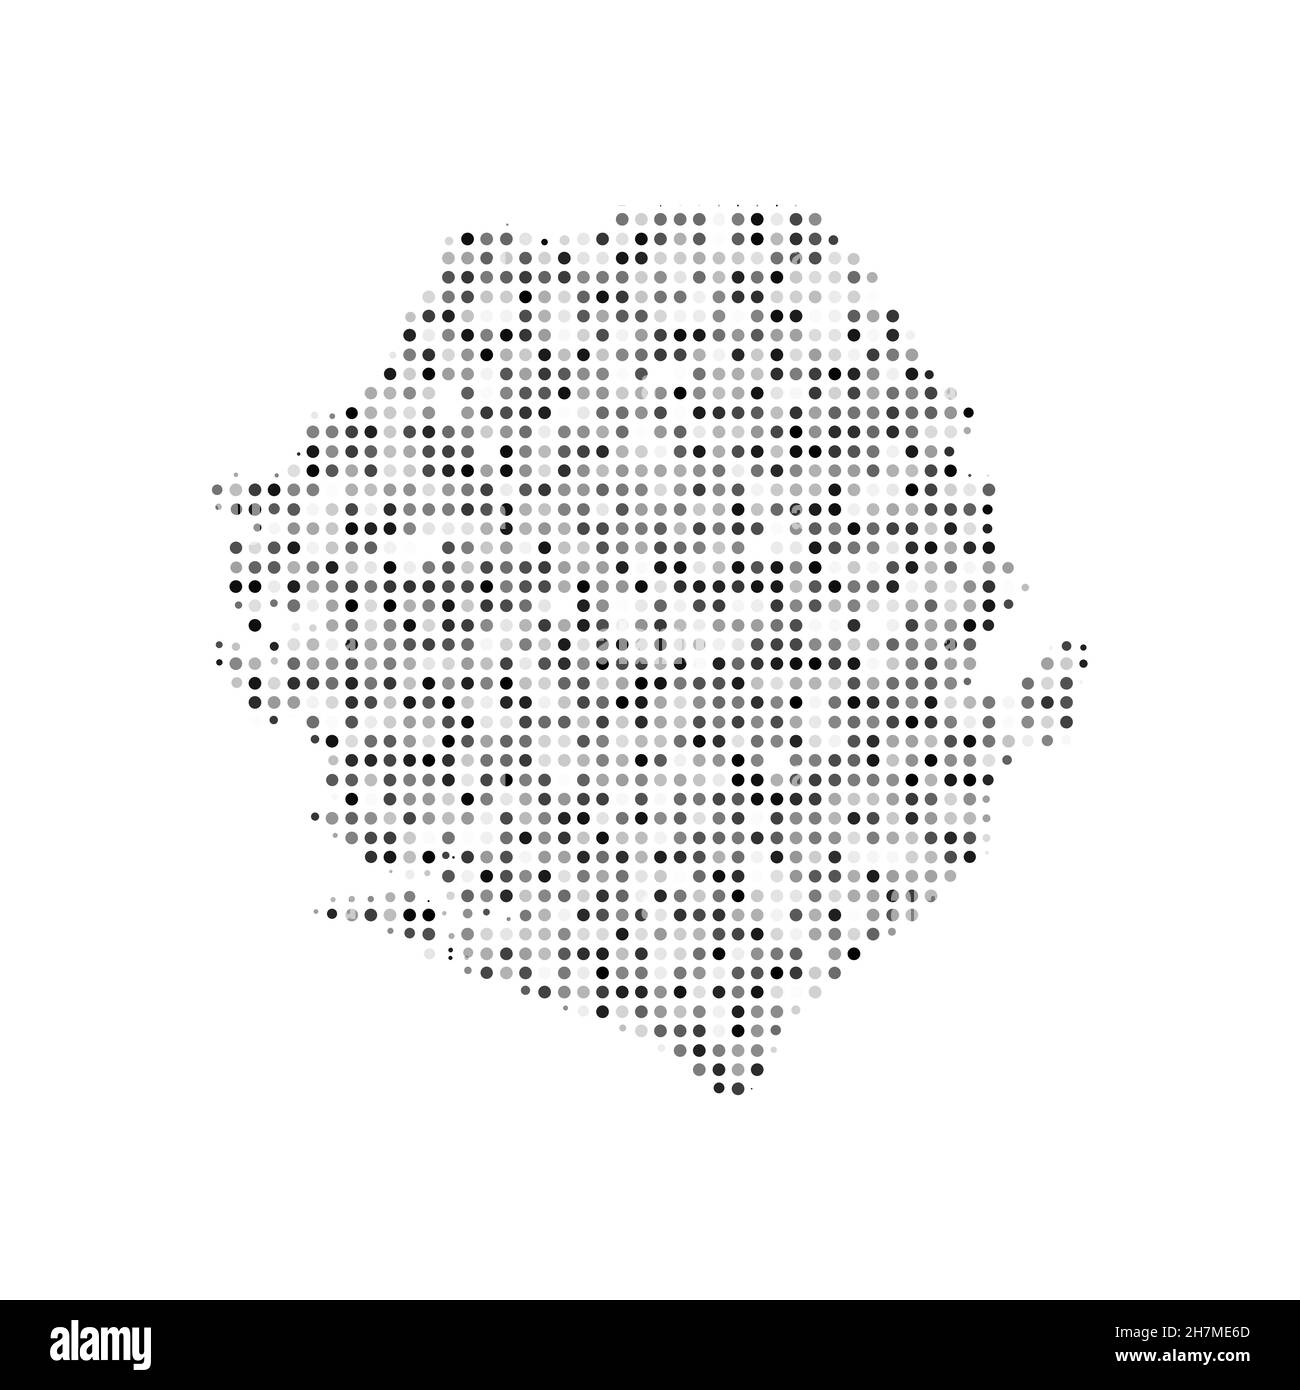 Abstrakte gepunktete schwarz-weiße Halbtoneffekt-Vektorkarte von Sierra Leone. Landeskarte digitale gepunktete Design-Vektor-Illustration. Stock Vektor